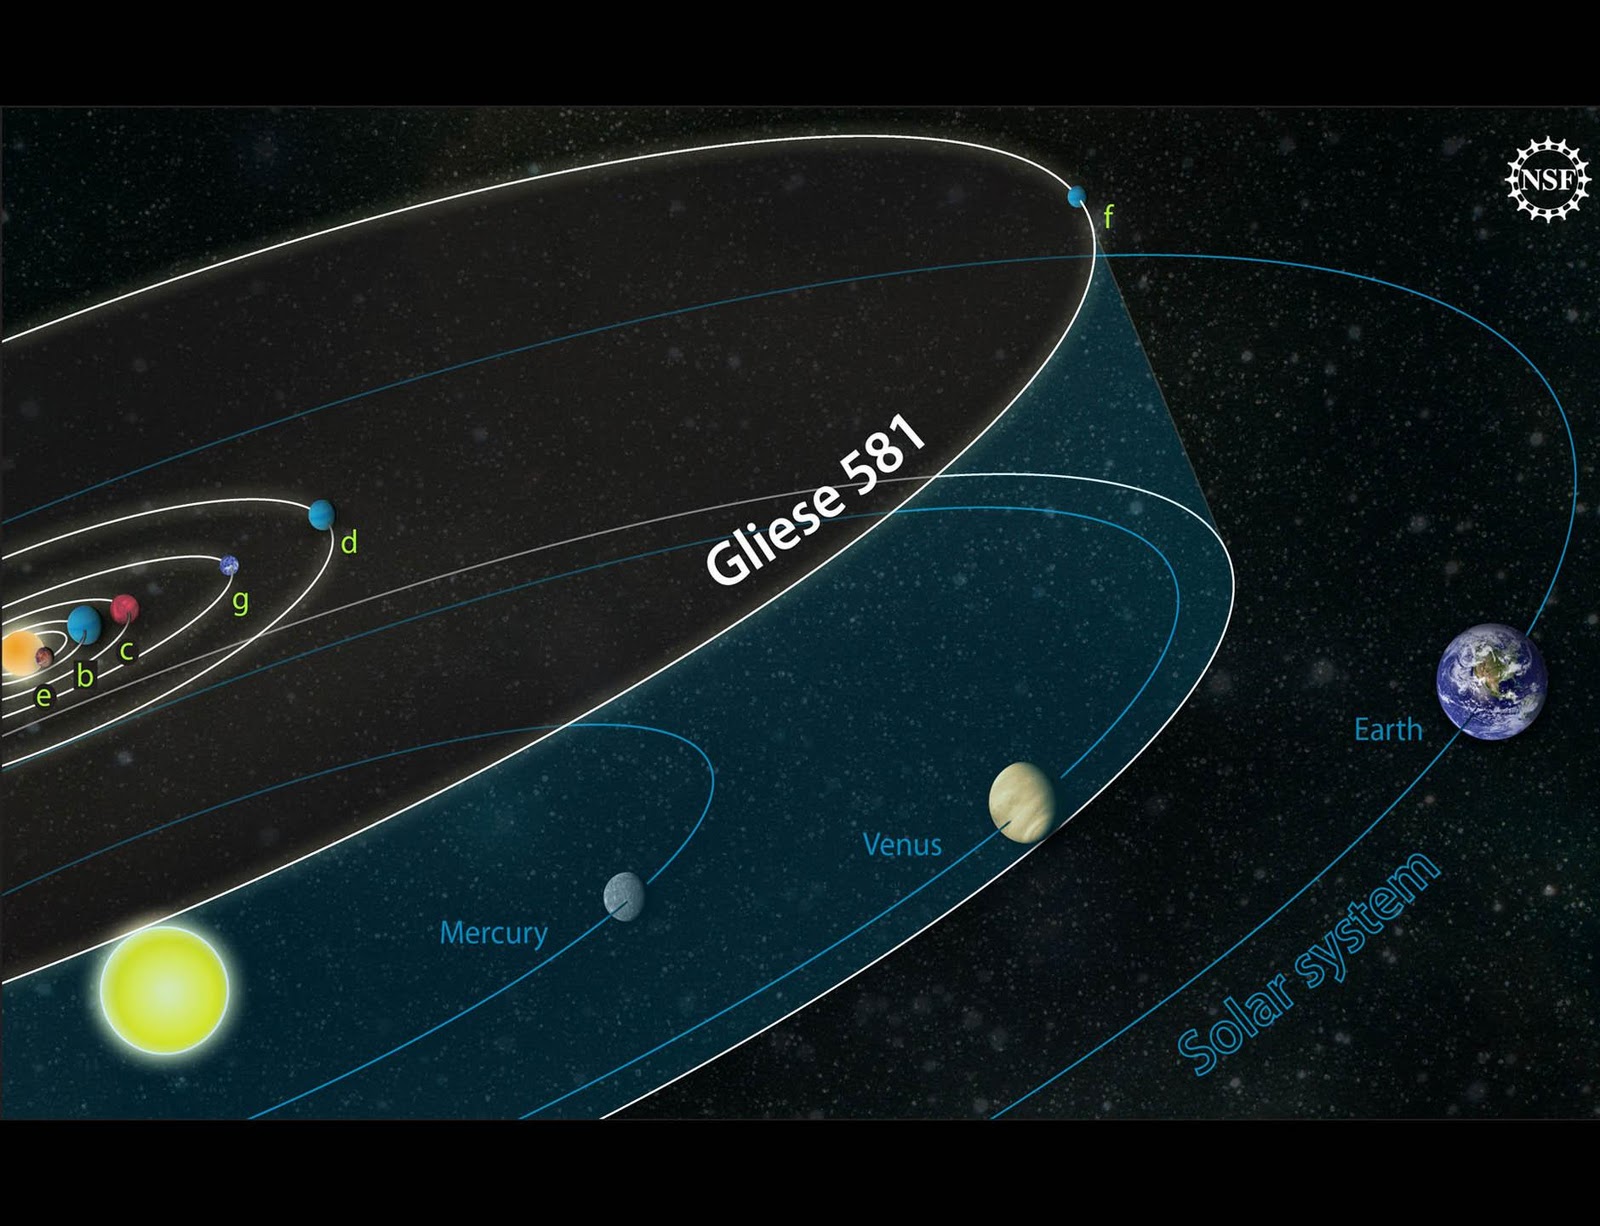 Terra2 - Gliese 581g